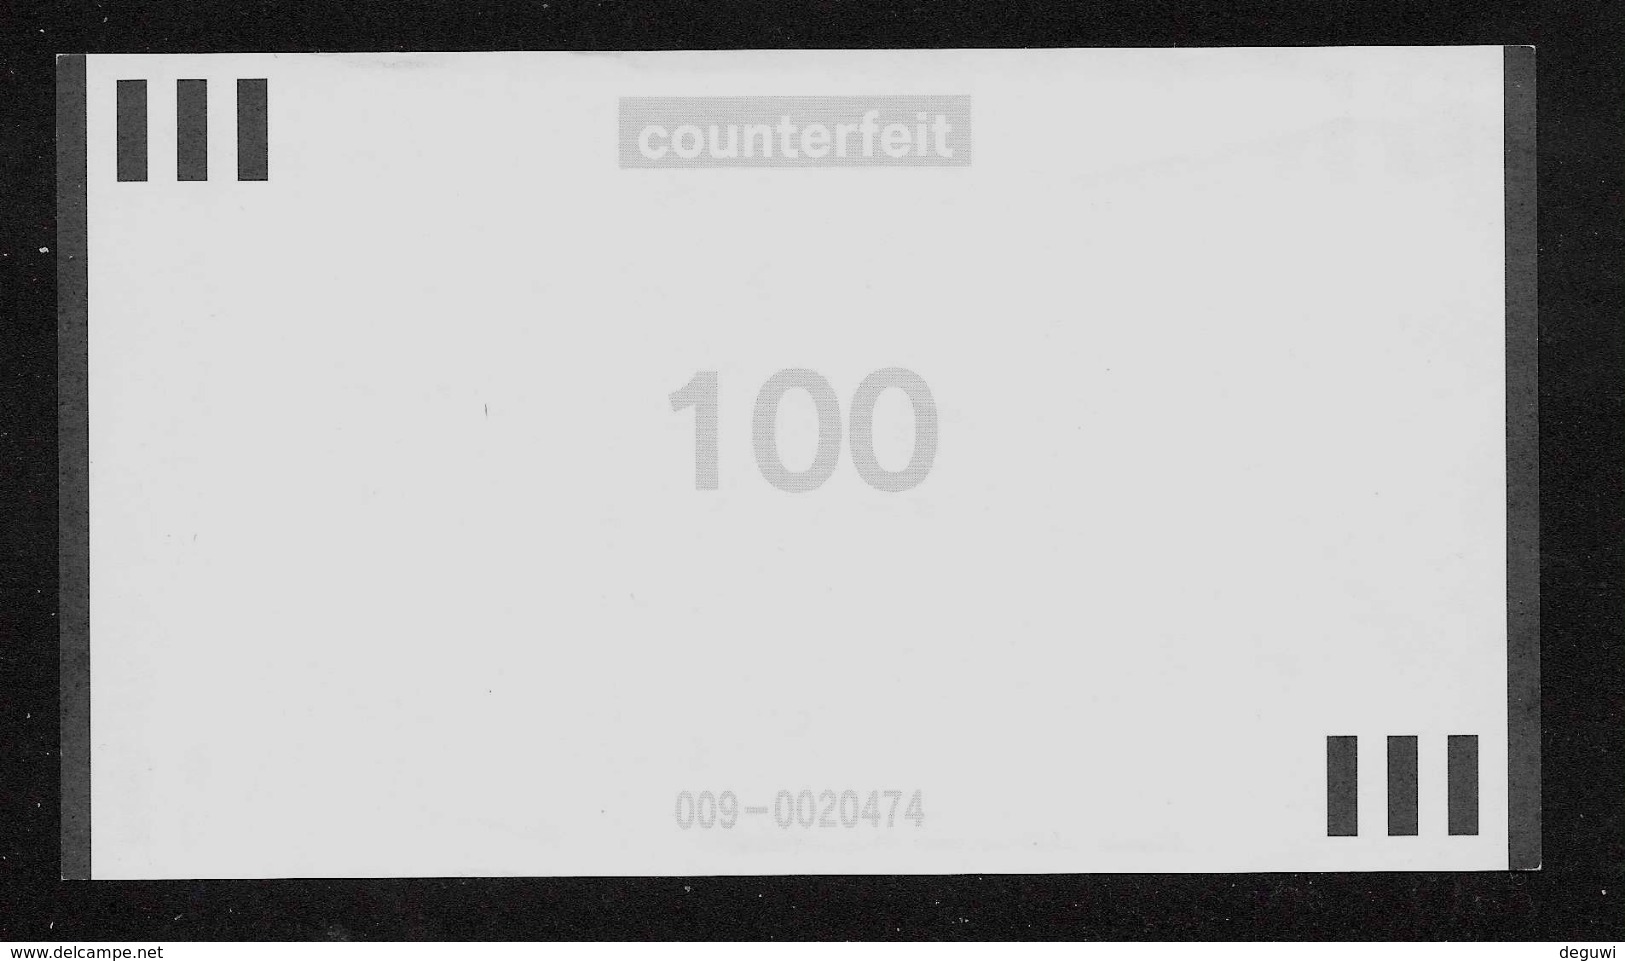 ATM Test Note NCR, 100 Euro, Nr. 009-0020474 Counterfait, Beids. Druck, RRRRR, UNC - 100 Euro